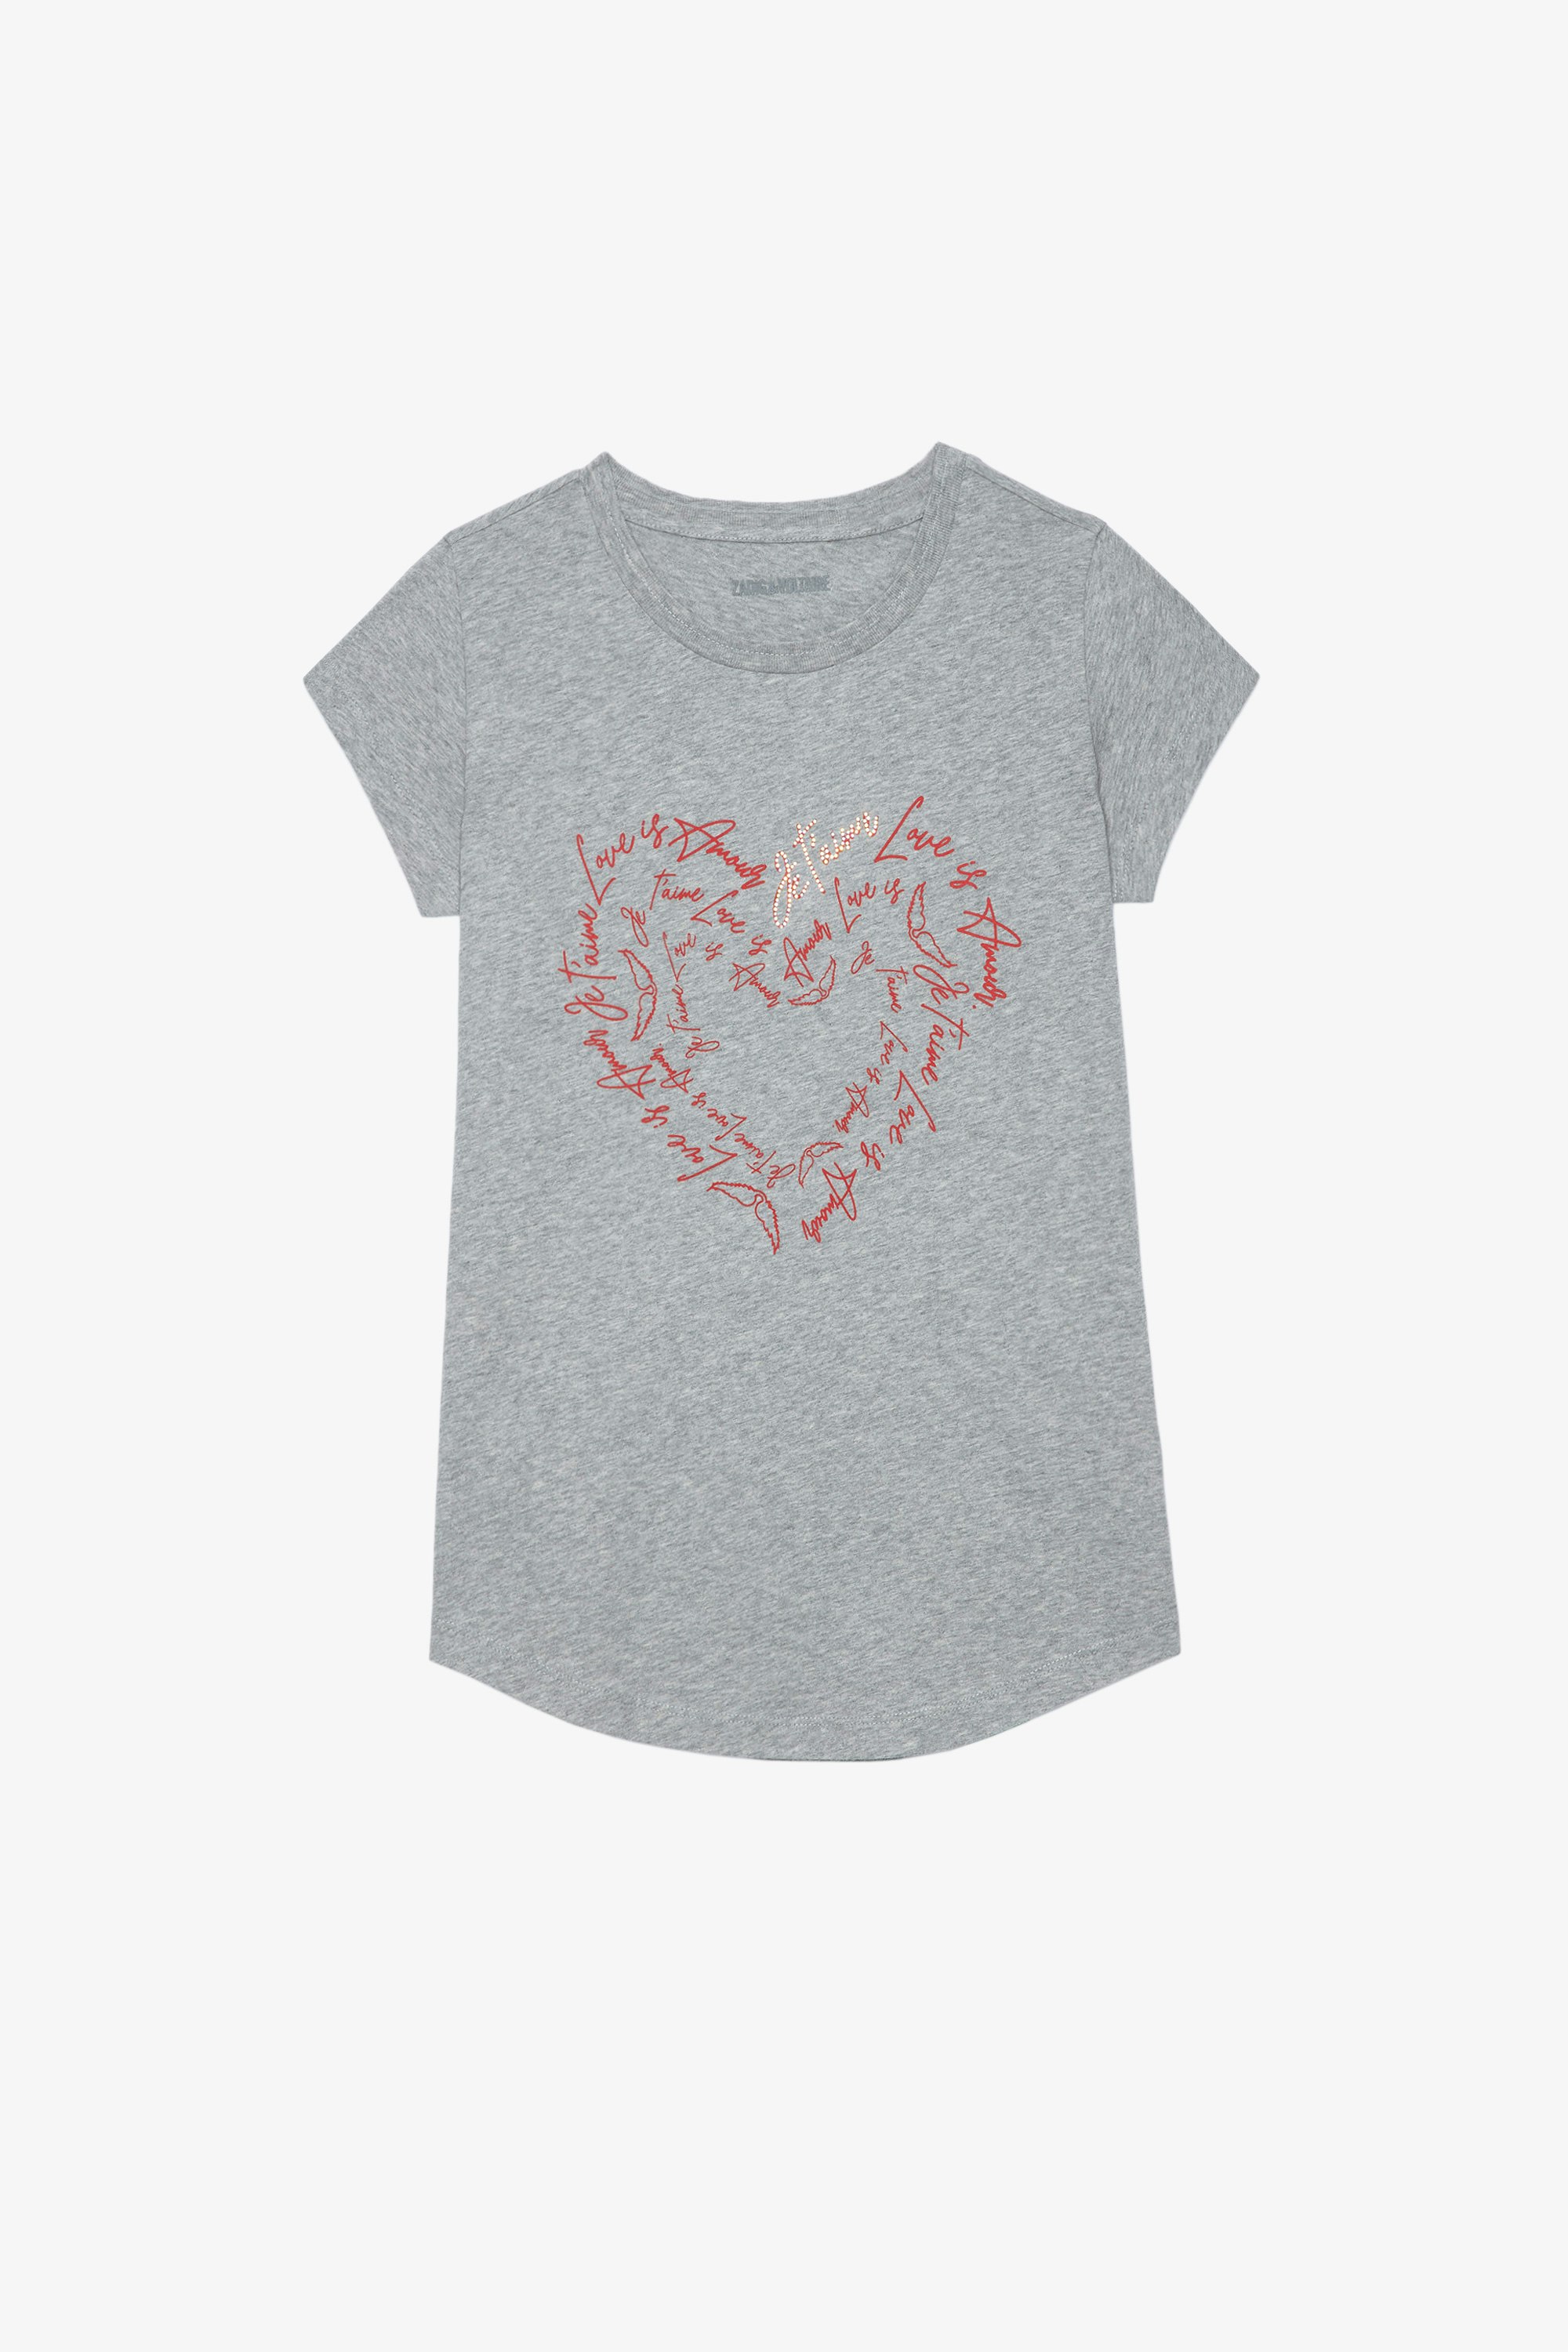 T-shirt Skinny Heart T-shirt en coton gris chiné imprimé coeur et cristaux Femme